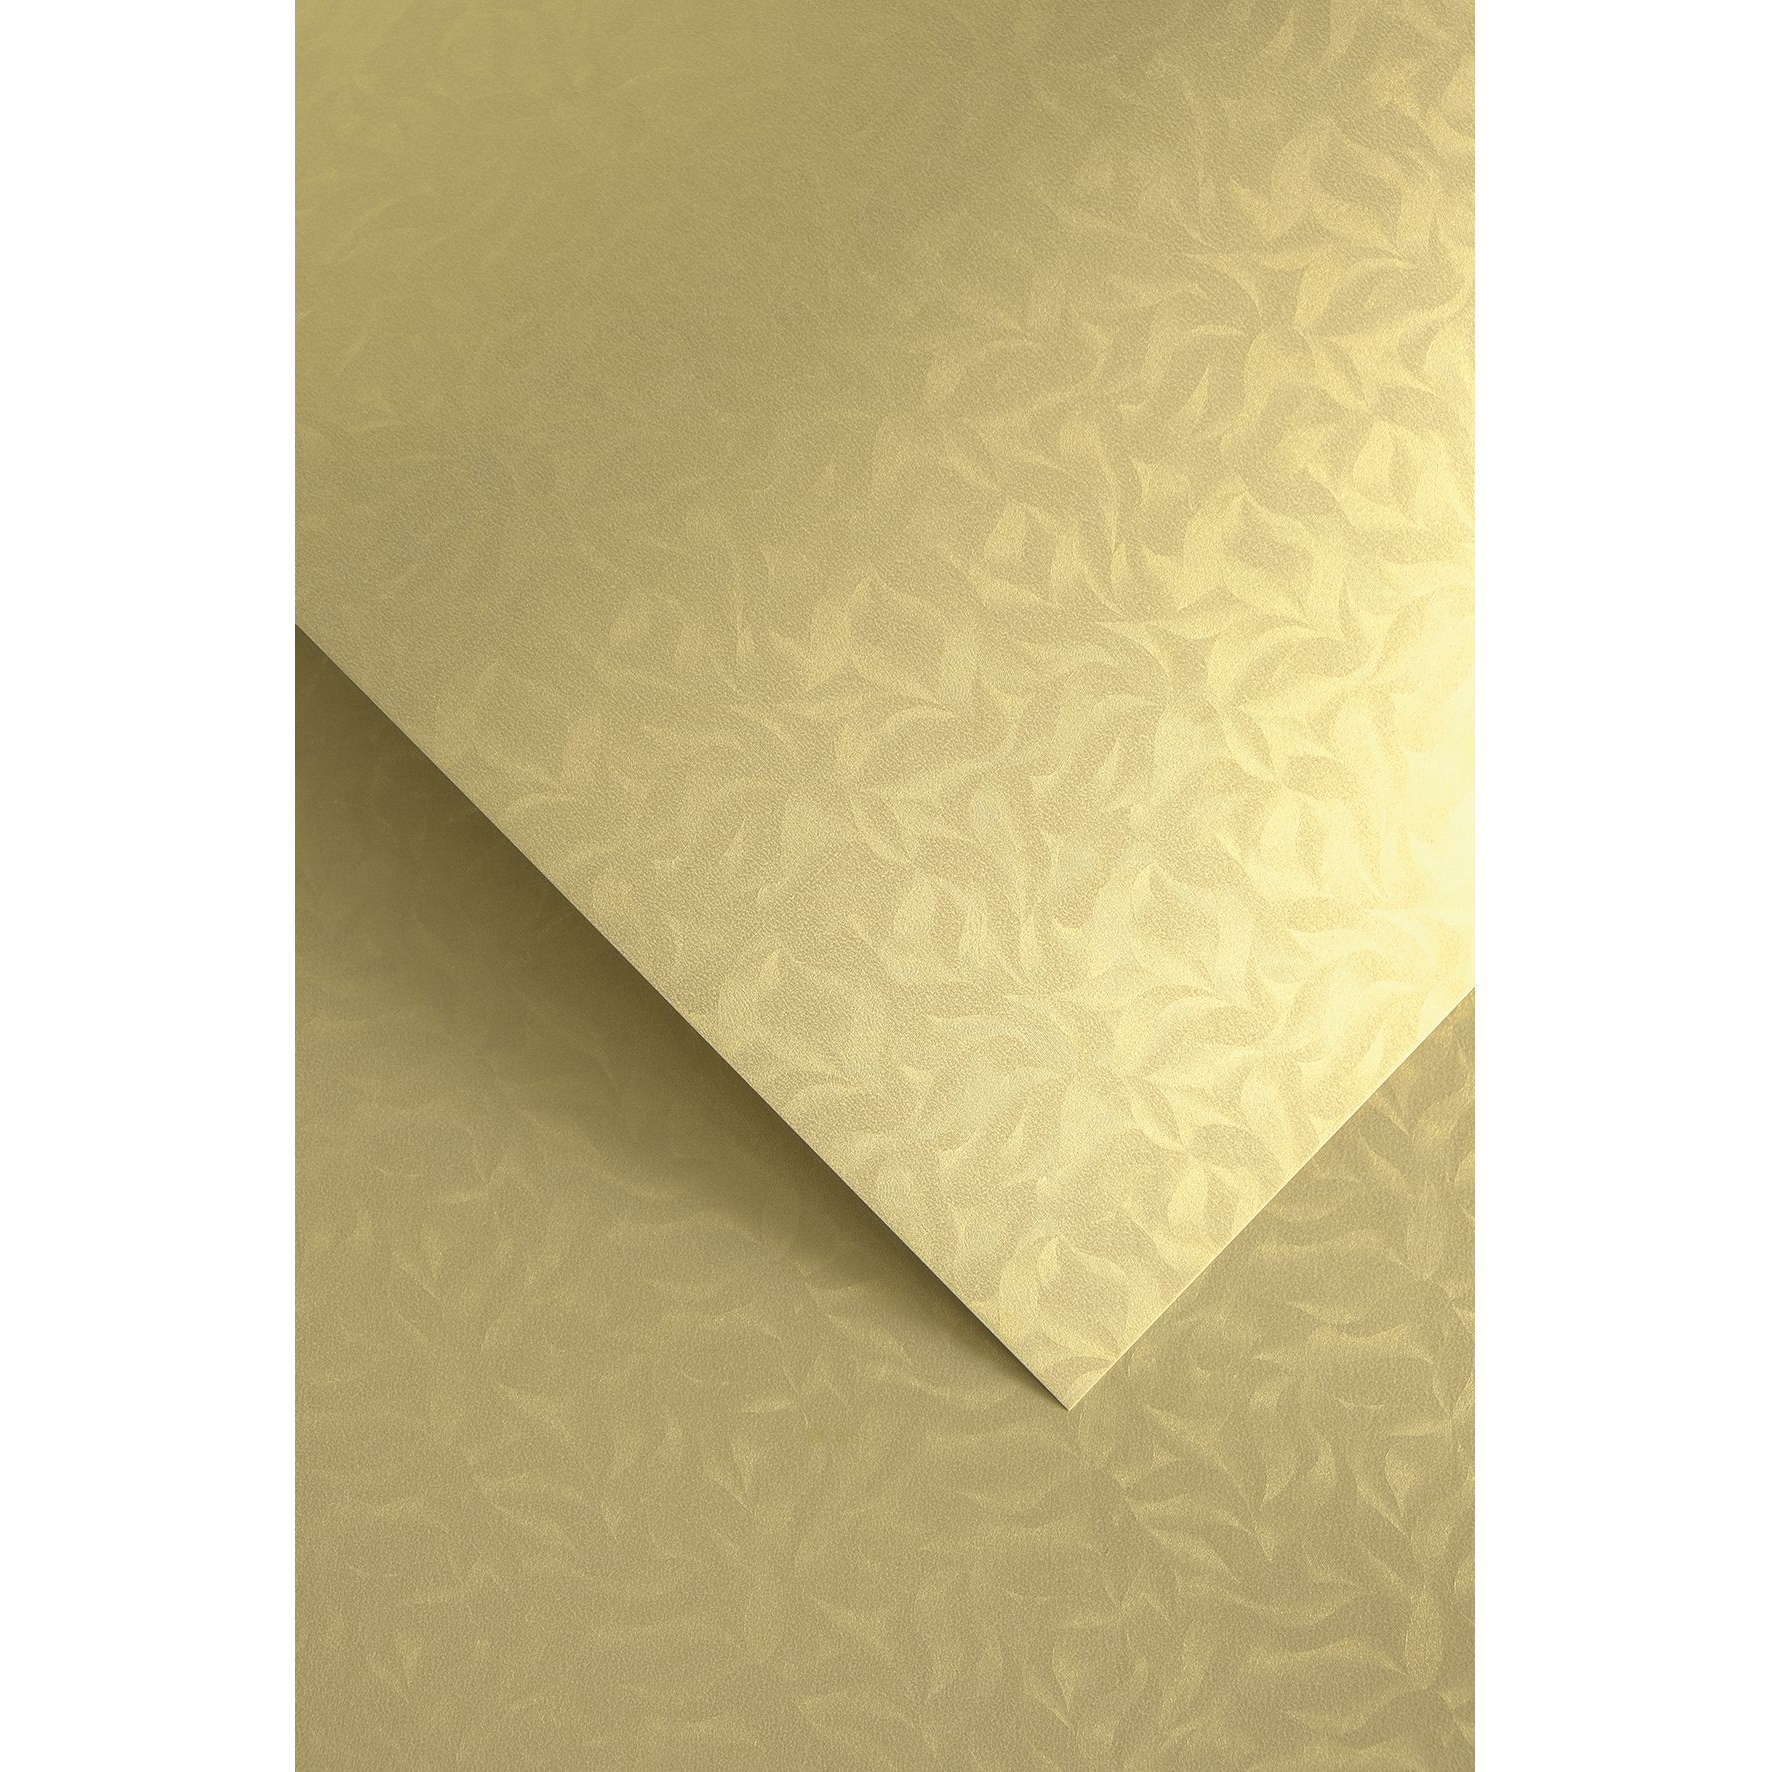 Ozdobný papír Olympia, zlatý, 220g, 20ks